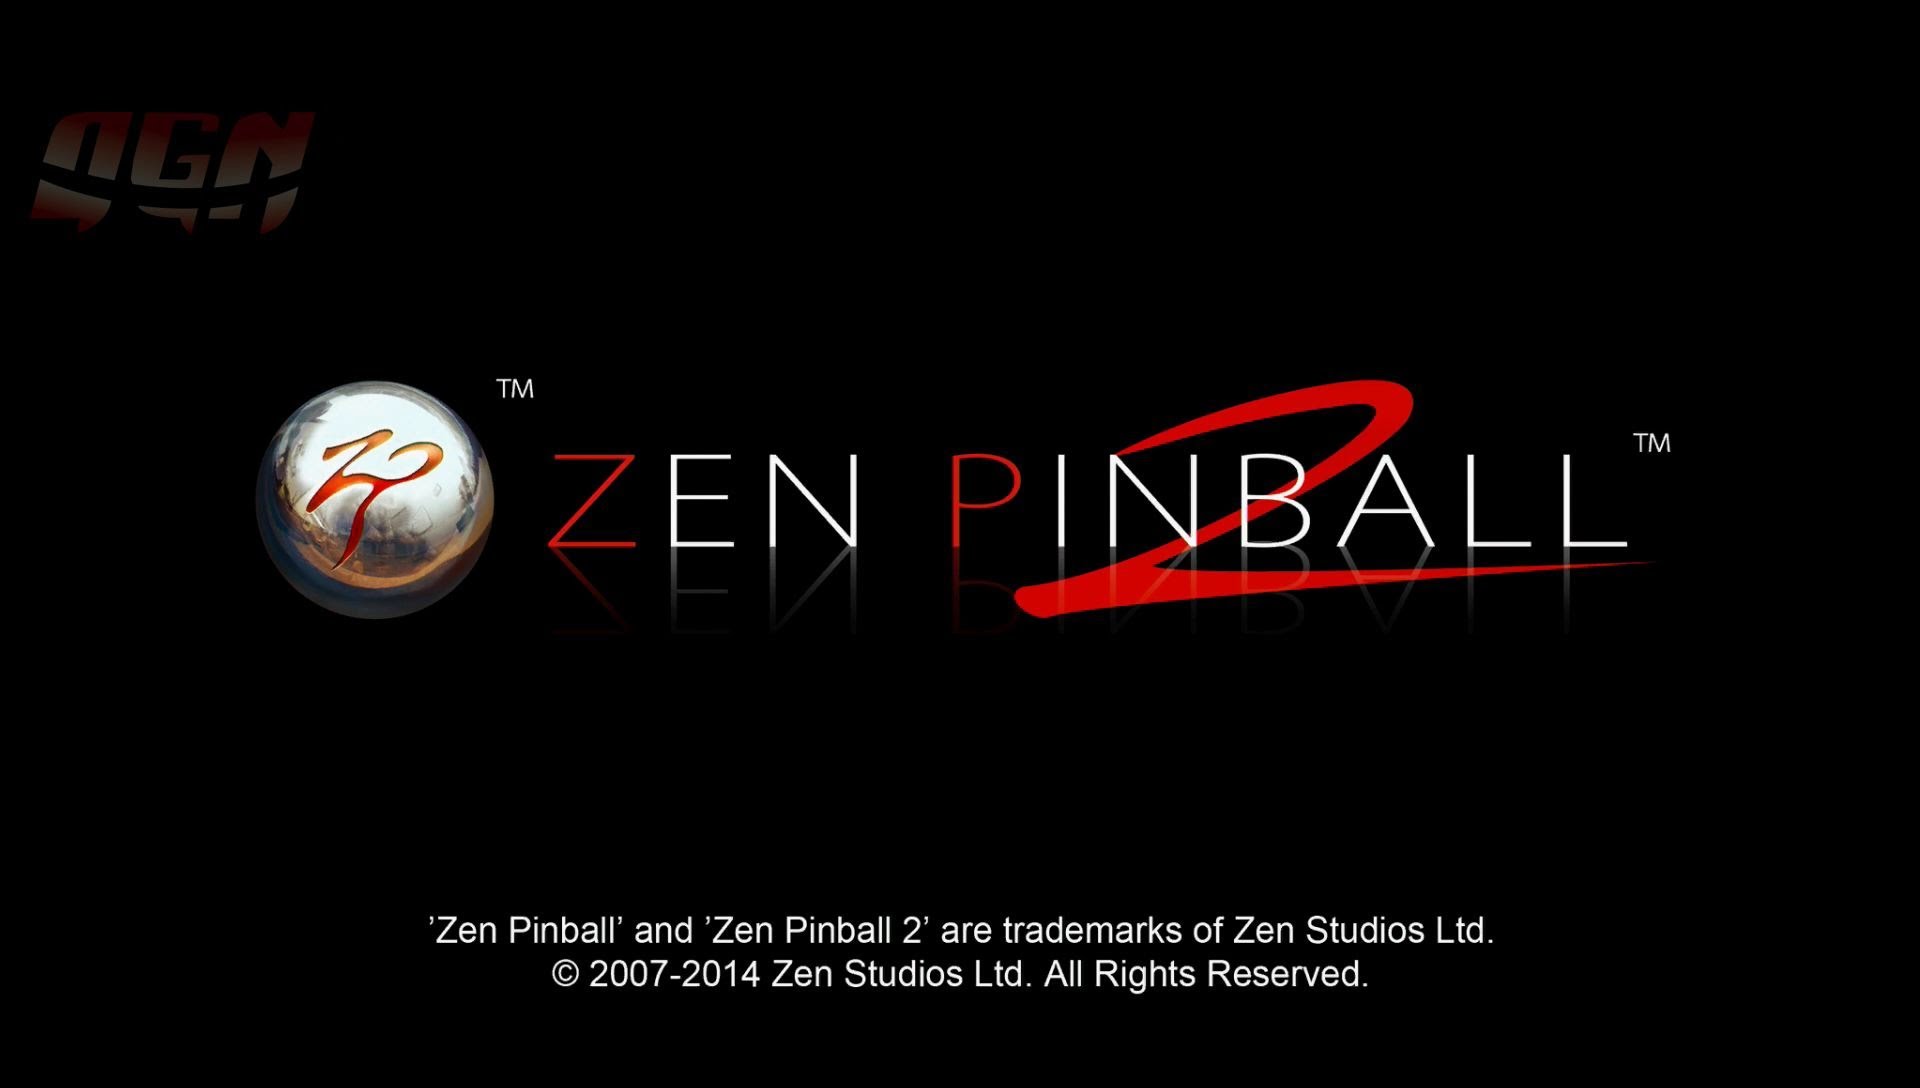 High Resolution Wallpaper | Zen Pinball 2 1920x1088 px